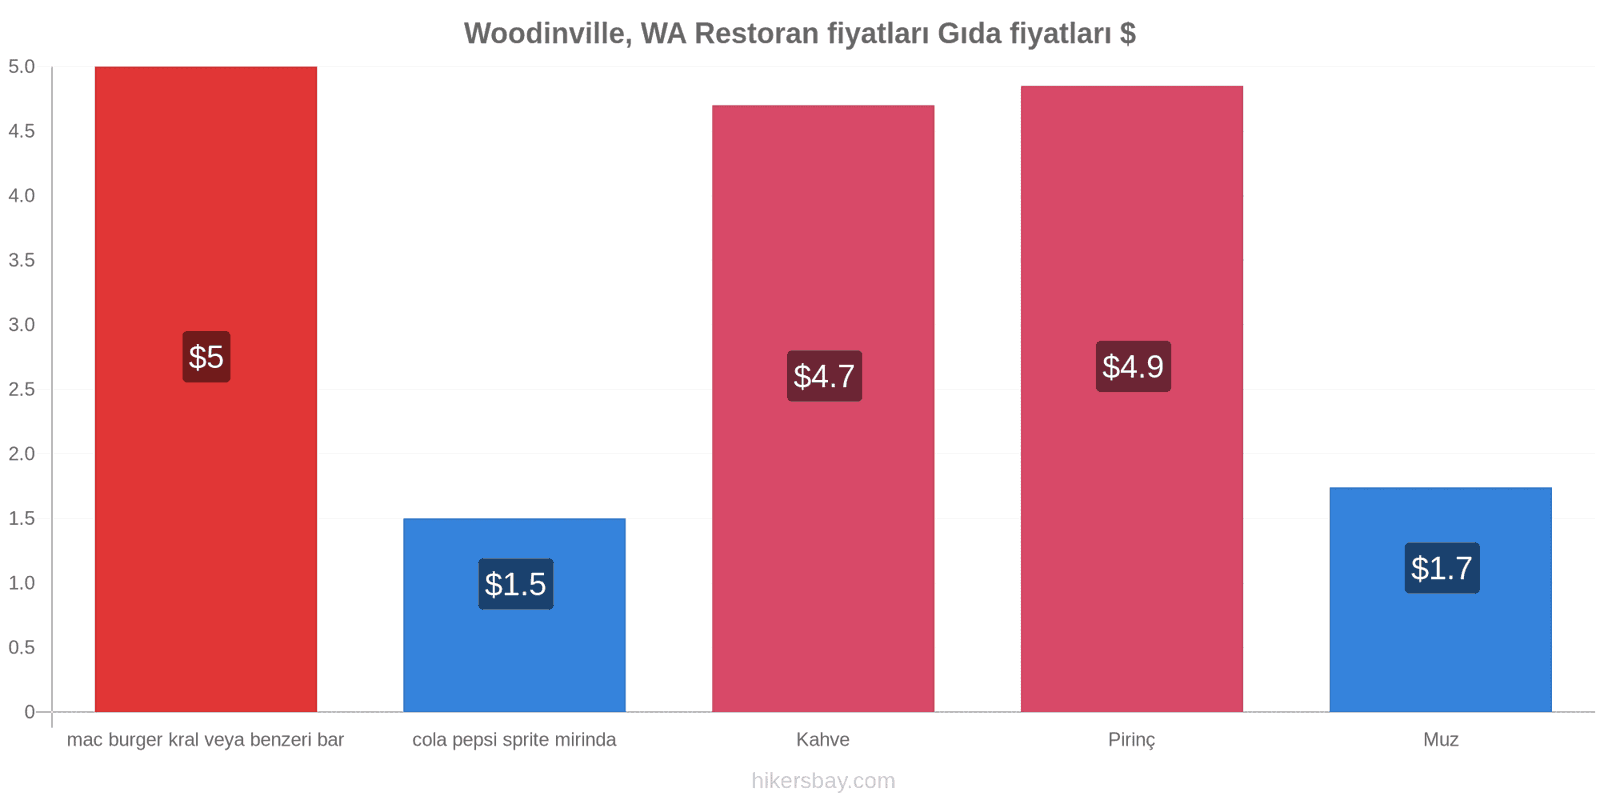 Woodinville, WA fiyat değişiklikleri hikersbay.com